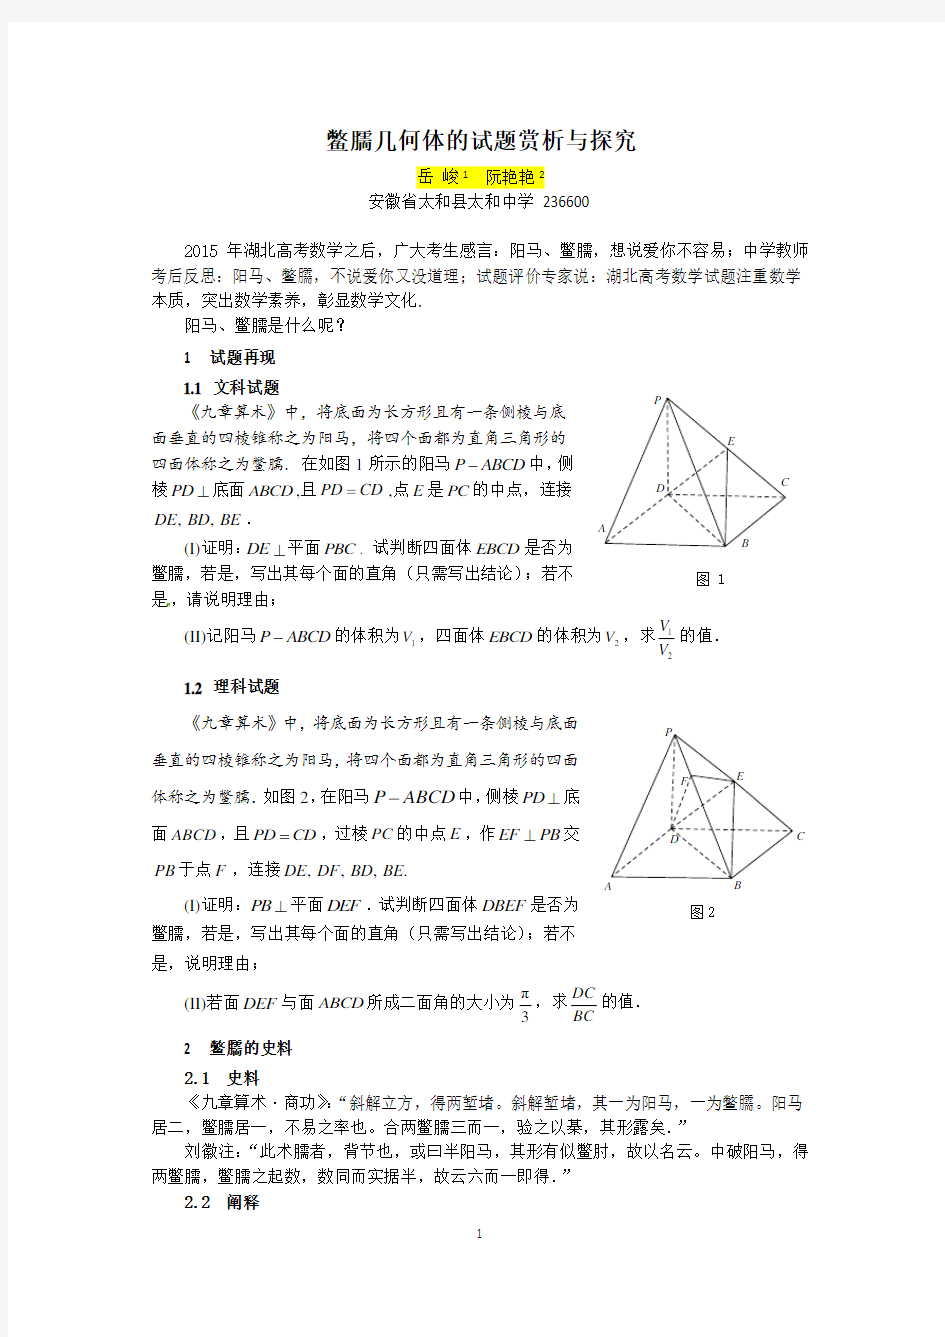 高考试题的探究(一)：鳖臑几何体的试题赏析与探究文章修改稿11.25